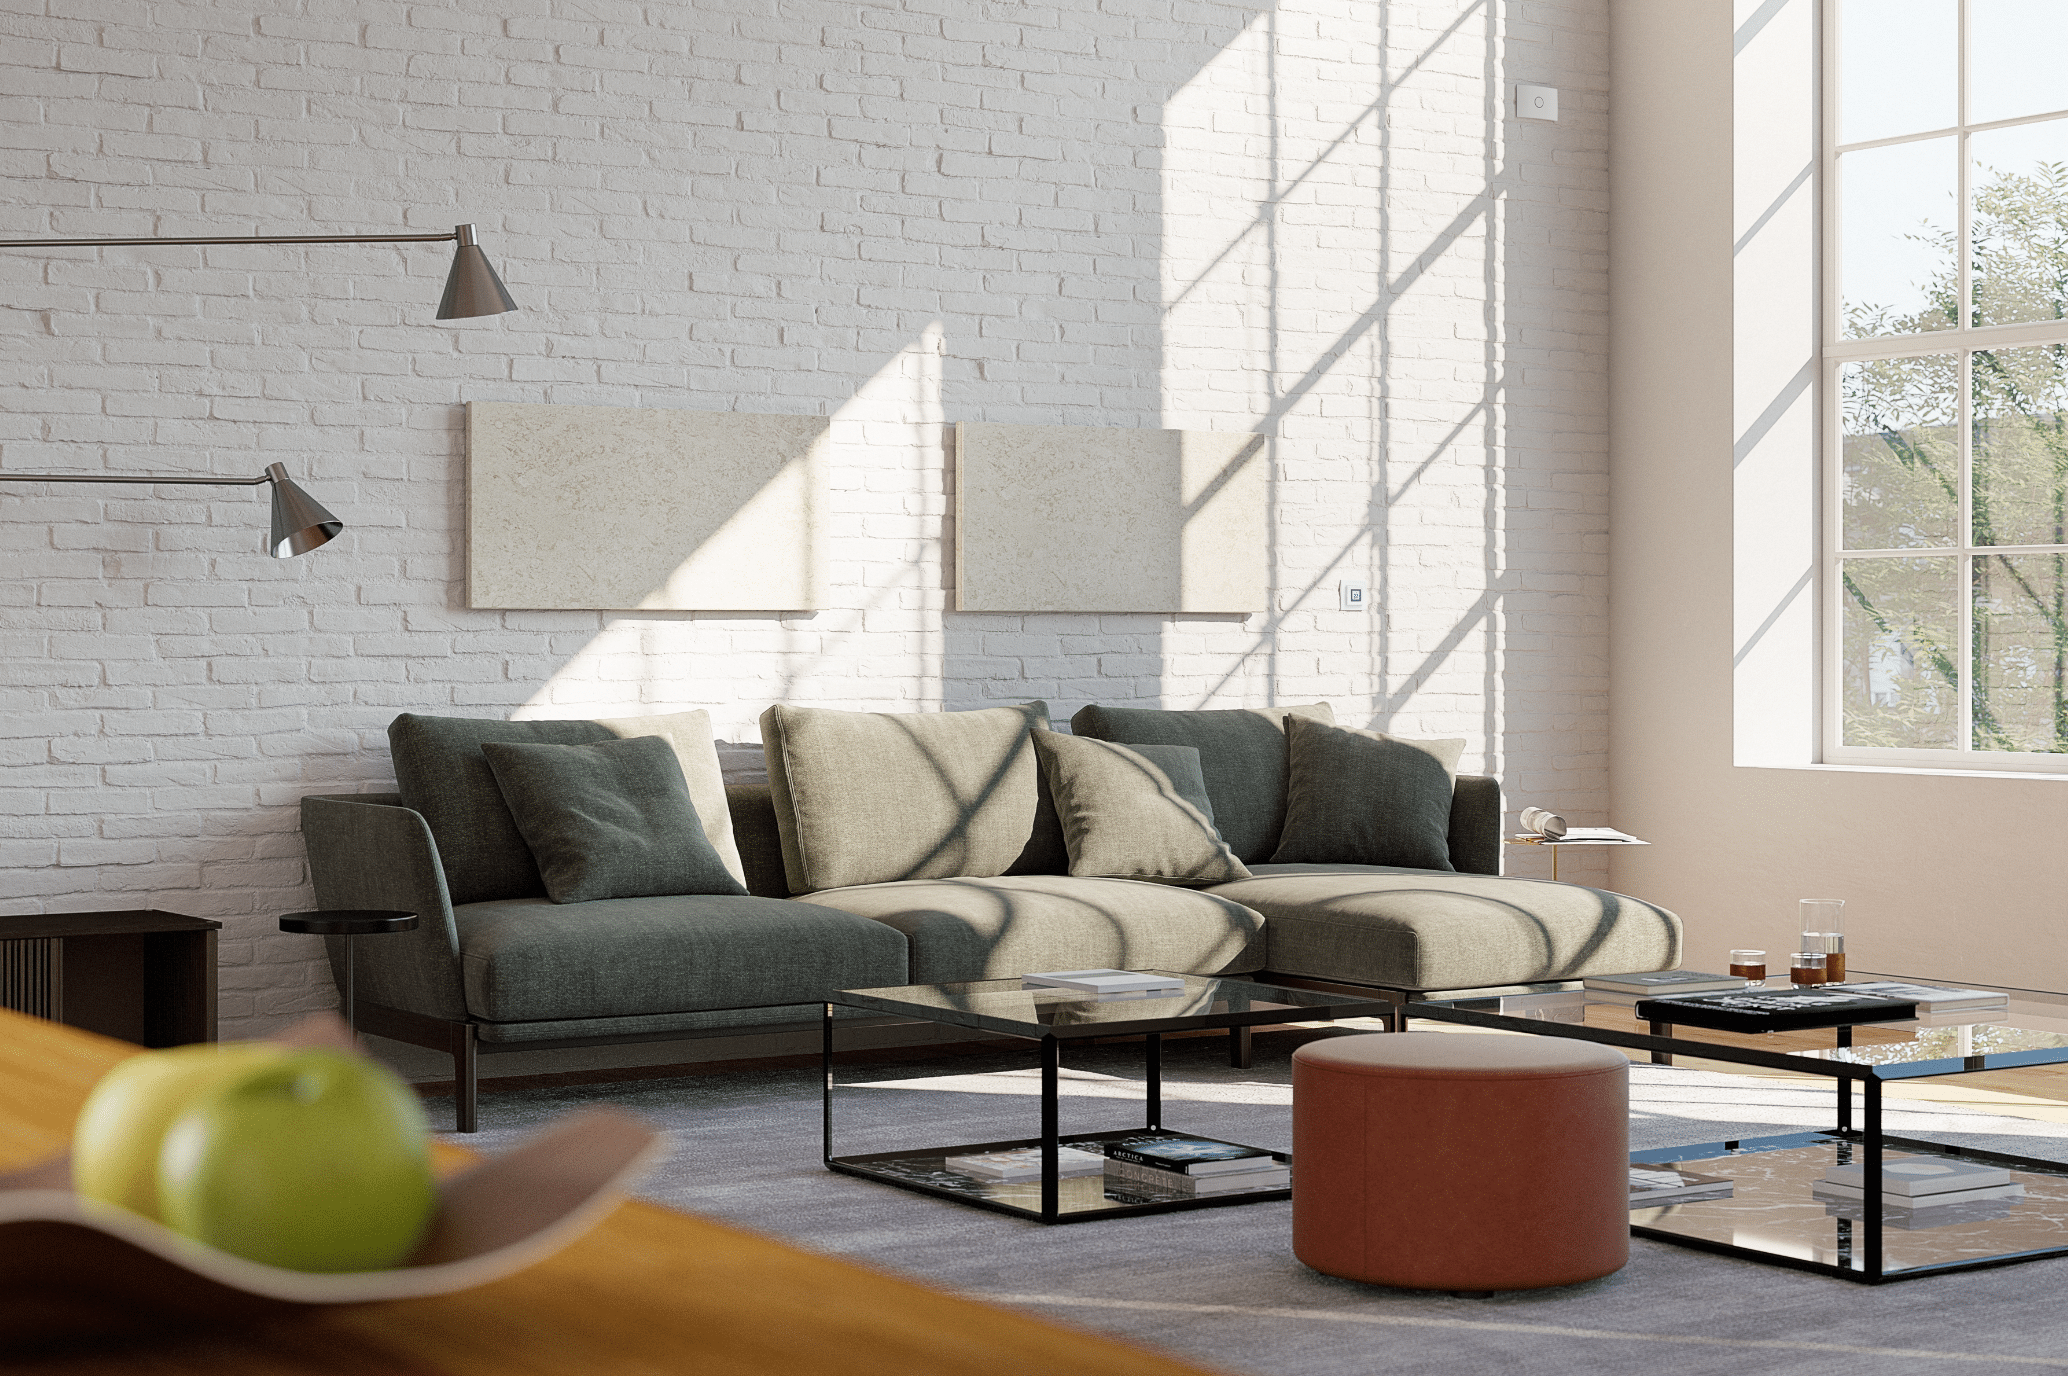 Dimplex zeigt ein modernes Wohnzimmer im Industrial Style mit einer Betonwand, dunkelgrüner Sitzlandschaft und einer Fussbodenheizung die unter dem Holzboden verlegt wurde.